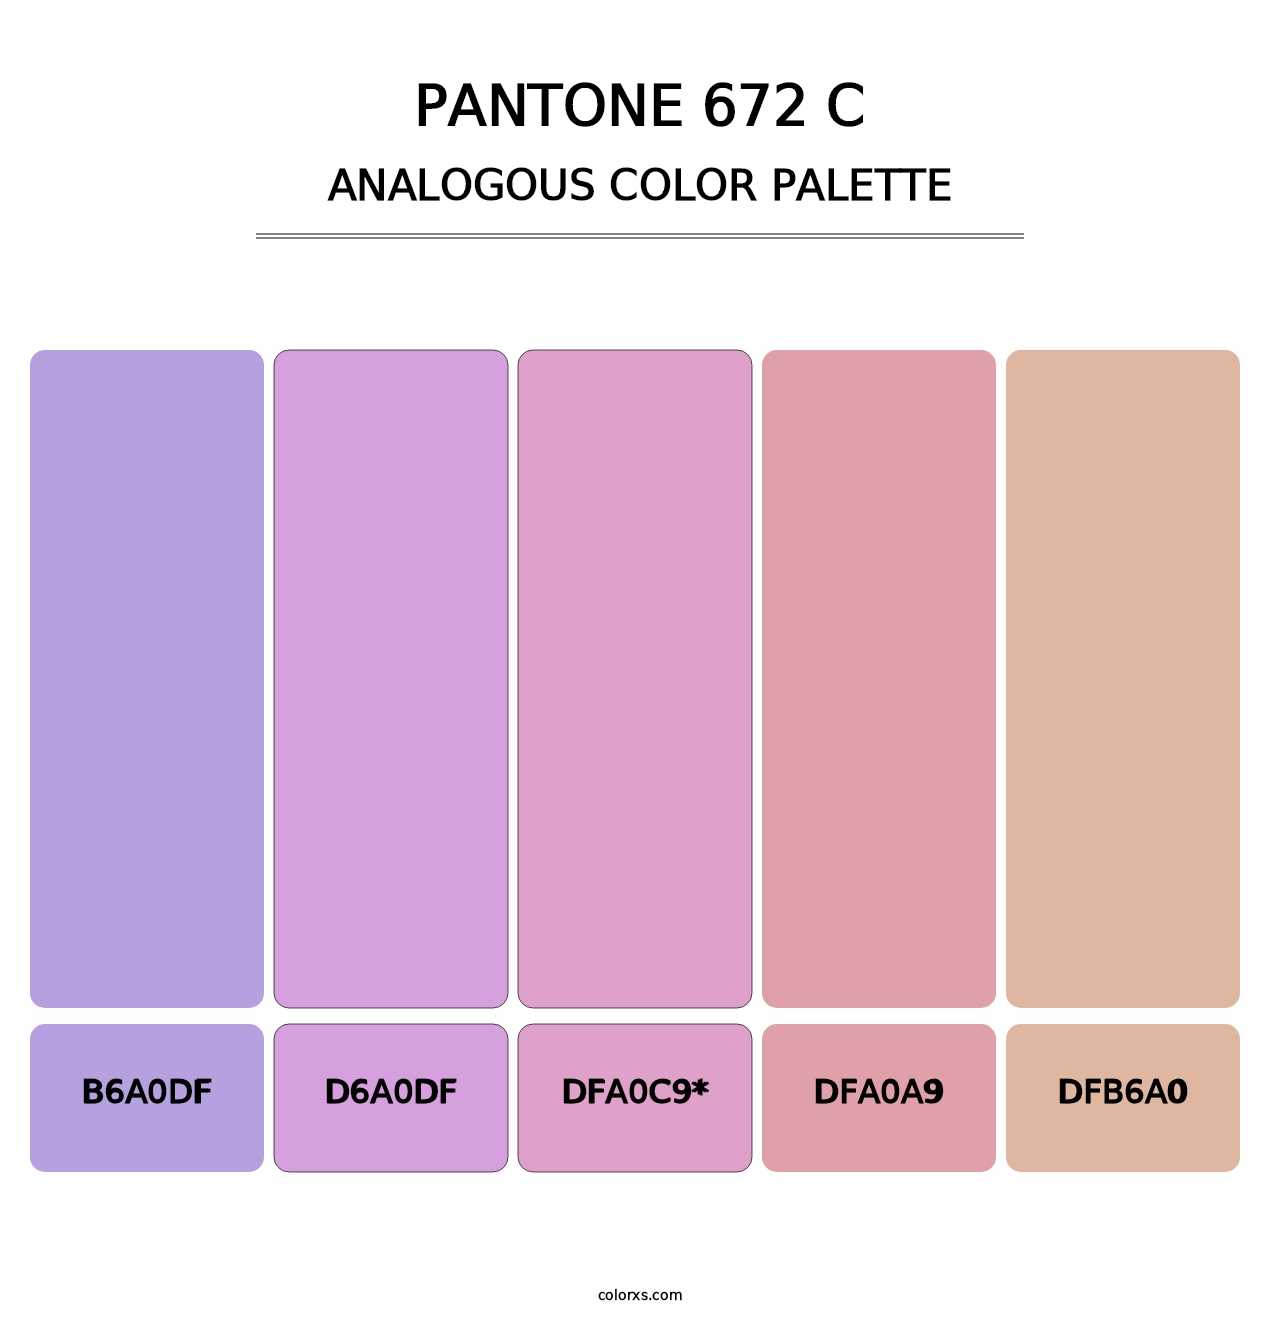 PANTONE 672 C - Analogous Color Palette